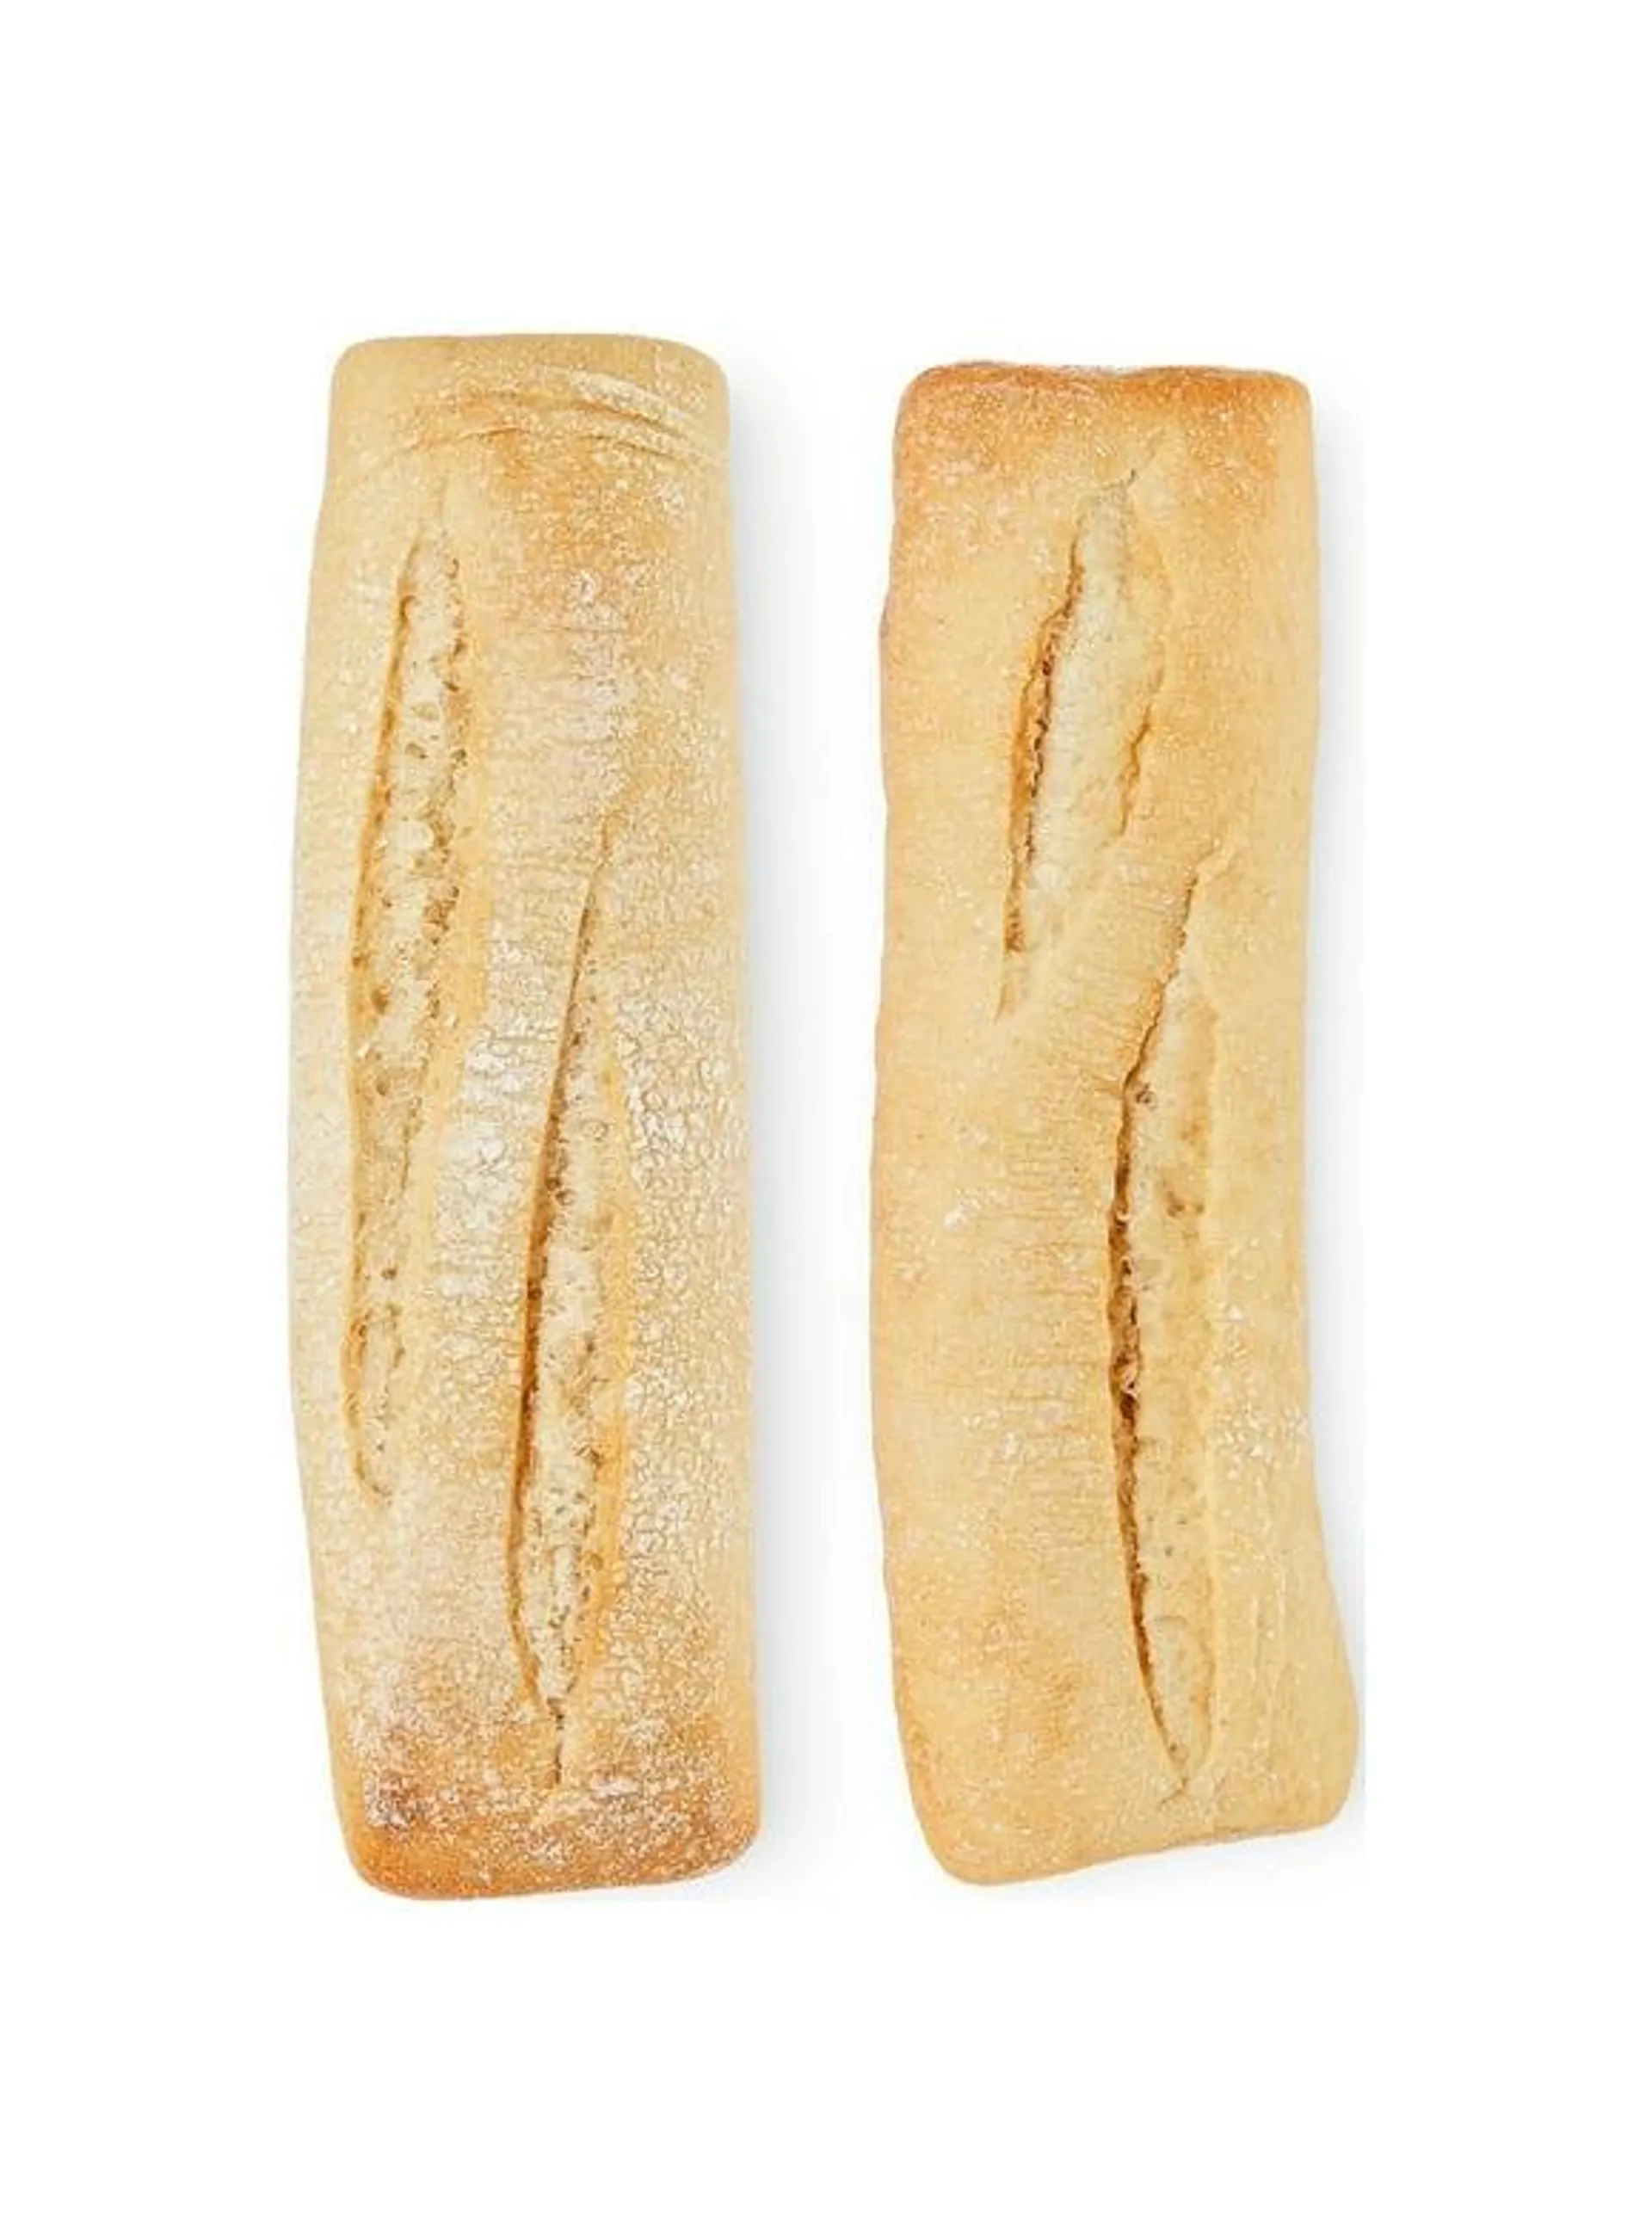 Bakery & Bread in Food (5)